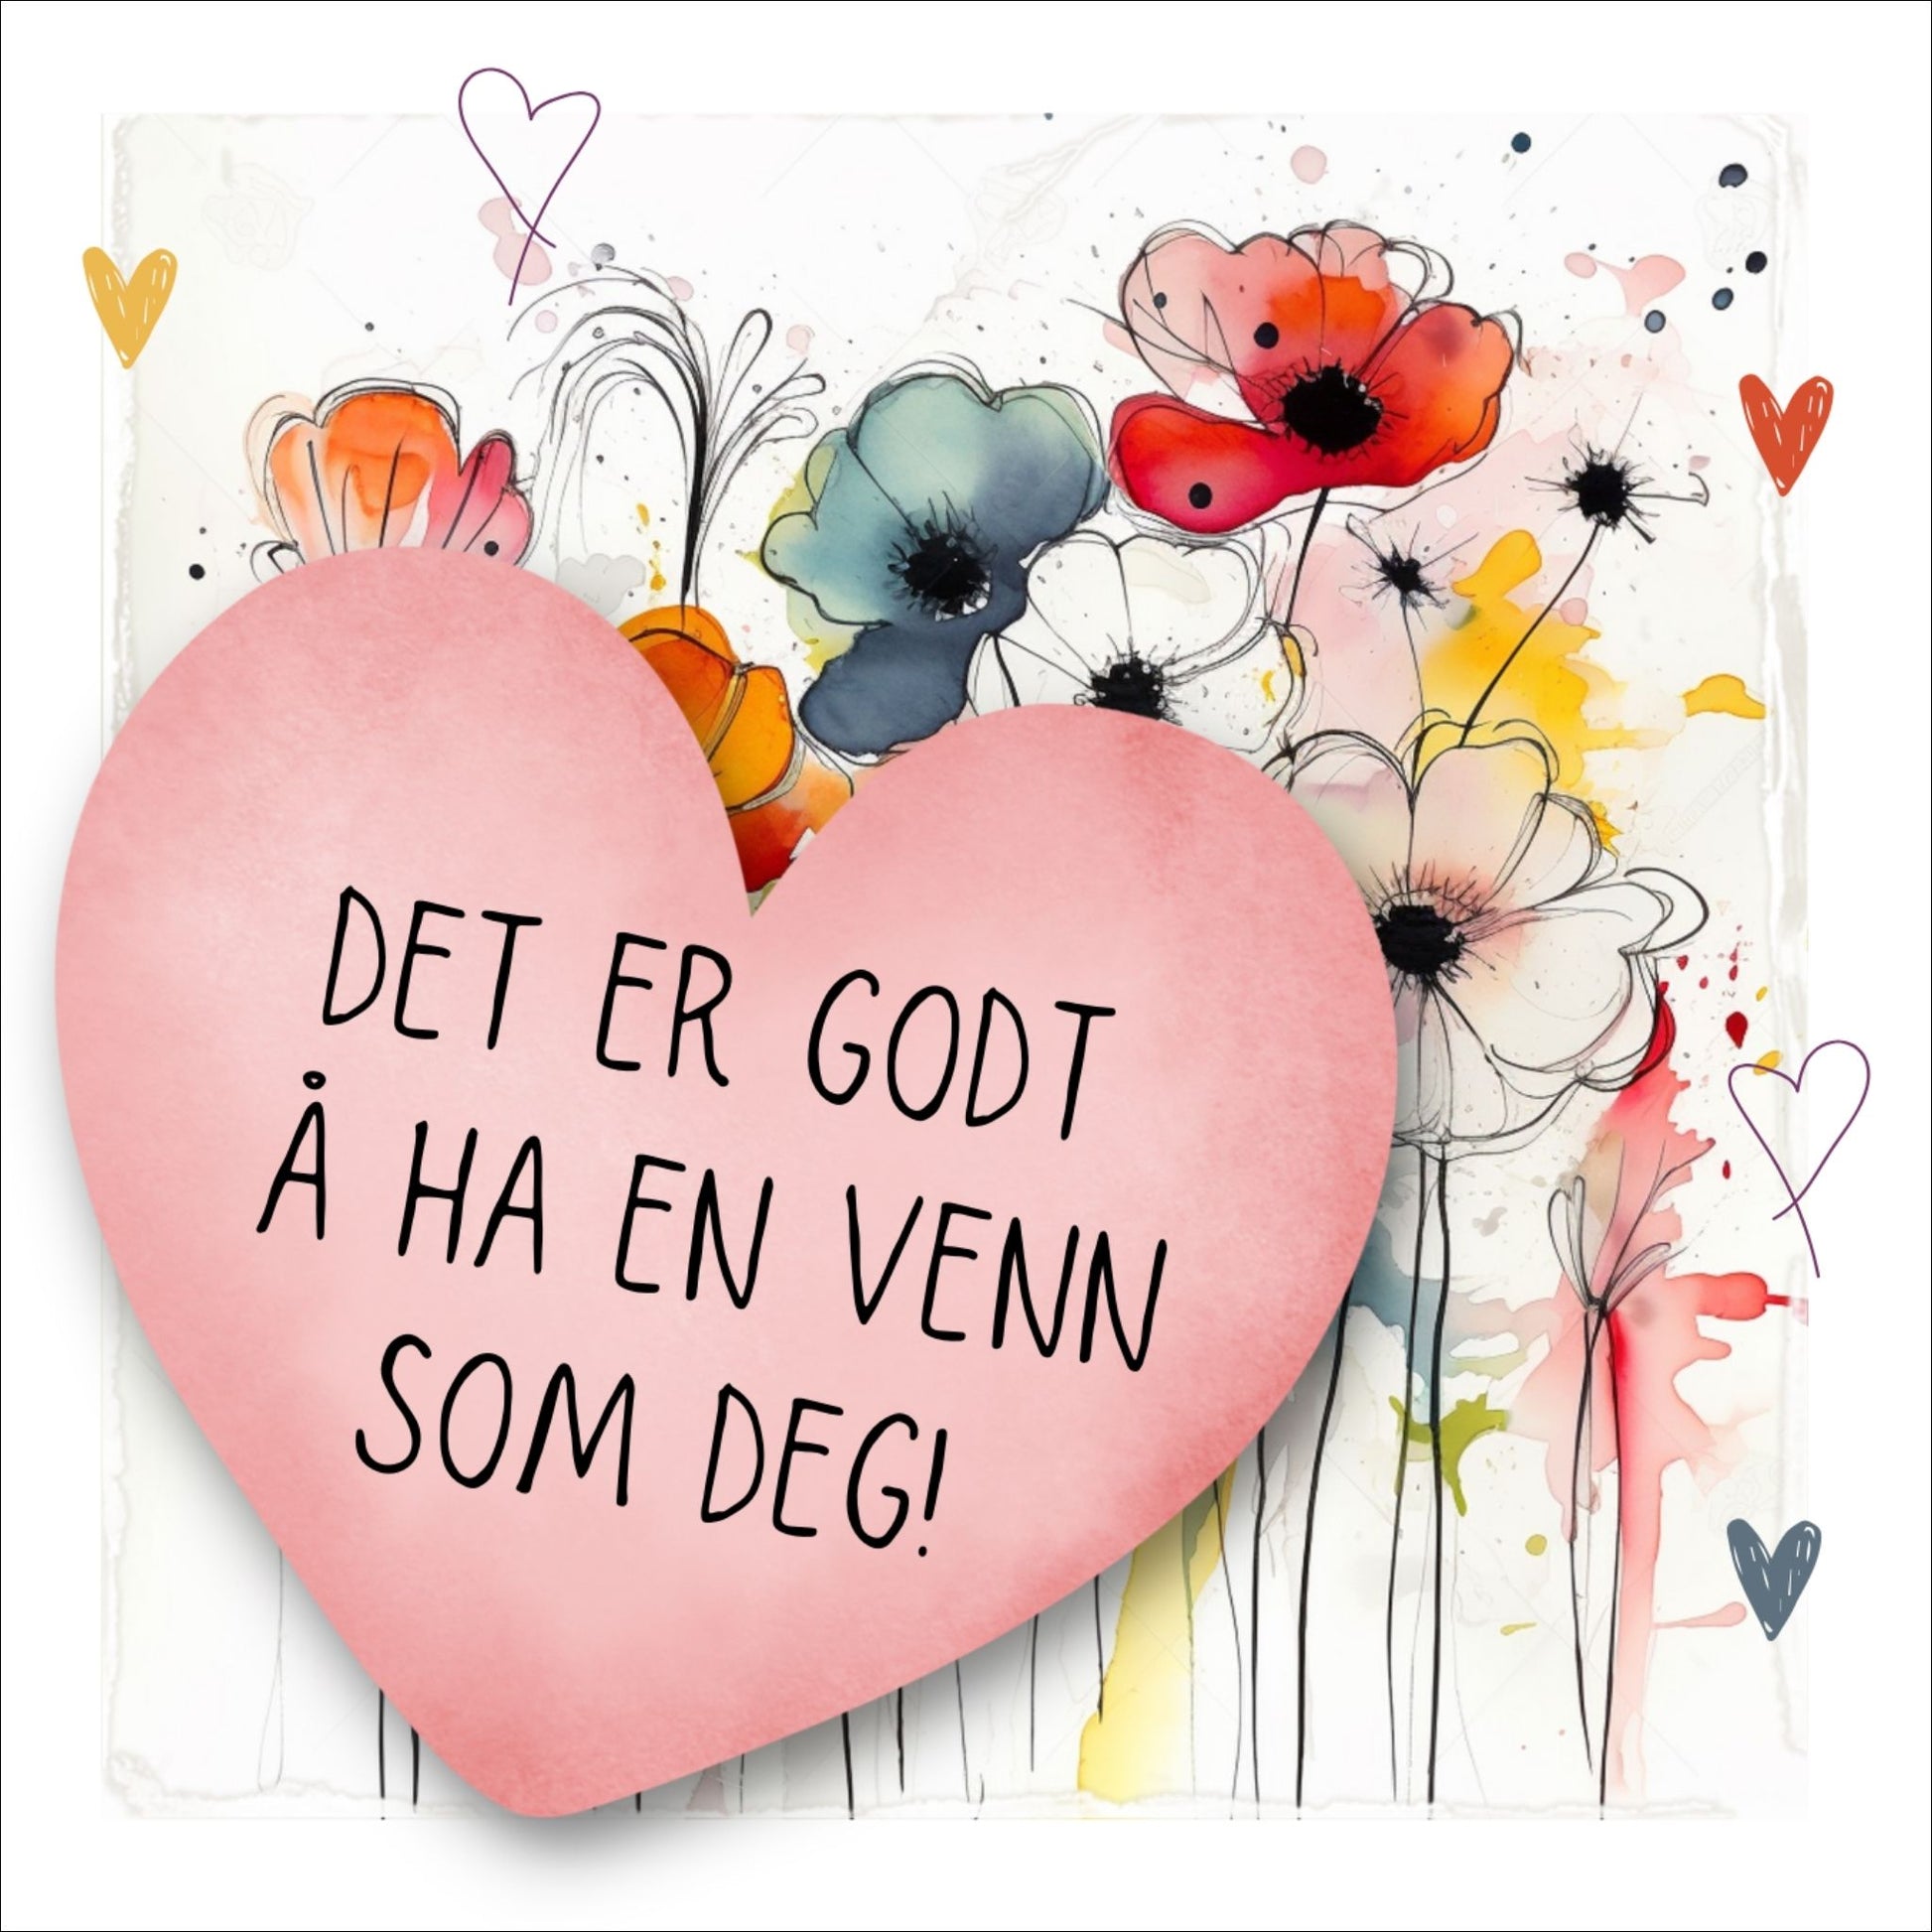 Plakat med rosa hjerte og tekst "Det er godt å ha en venn som deg" - og et motiv med blomster i gul, rød, hvit, blå og oransje. Med hvit kant på 1,5 cm. 